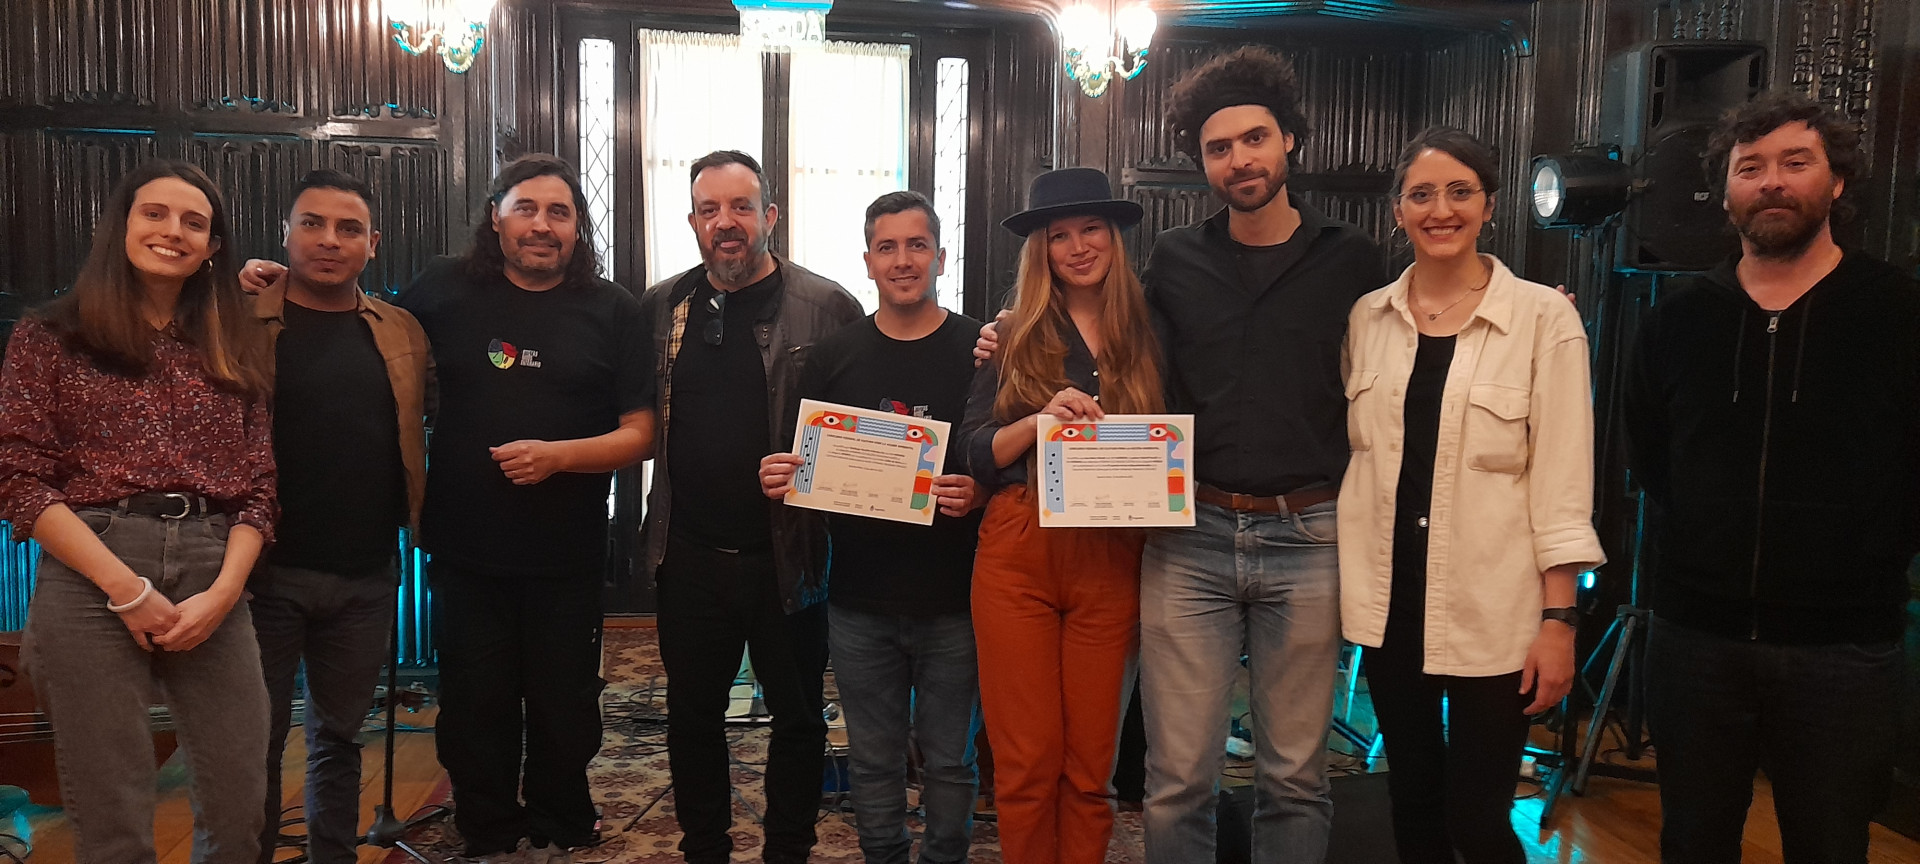 Ariel Direse entregó los certificados de premiación a los y las artistas que participaron del Concurso federal de cultura por la acción ambiental